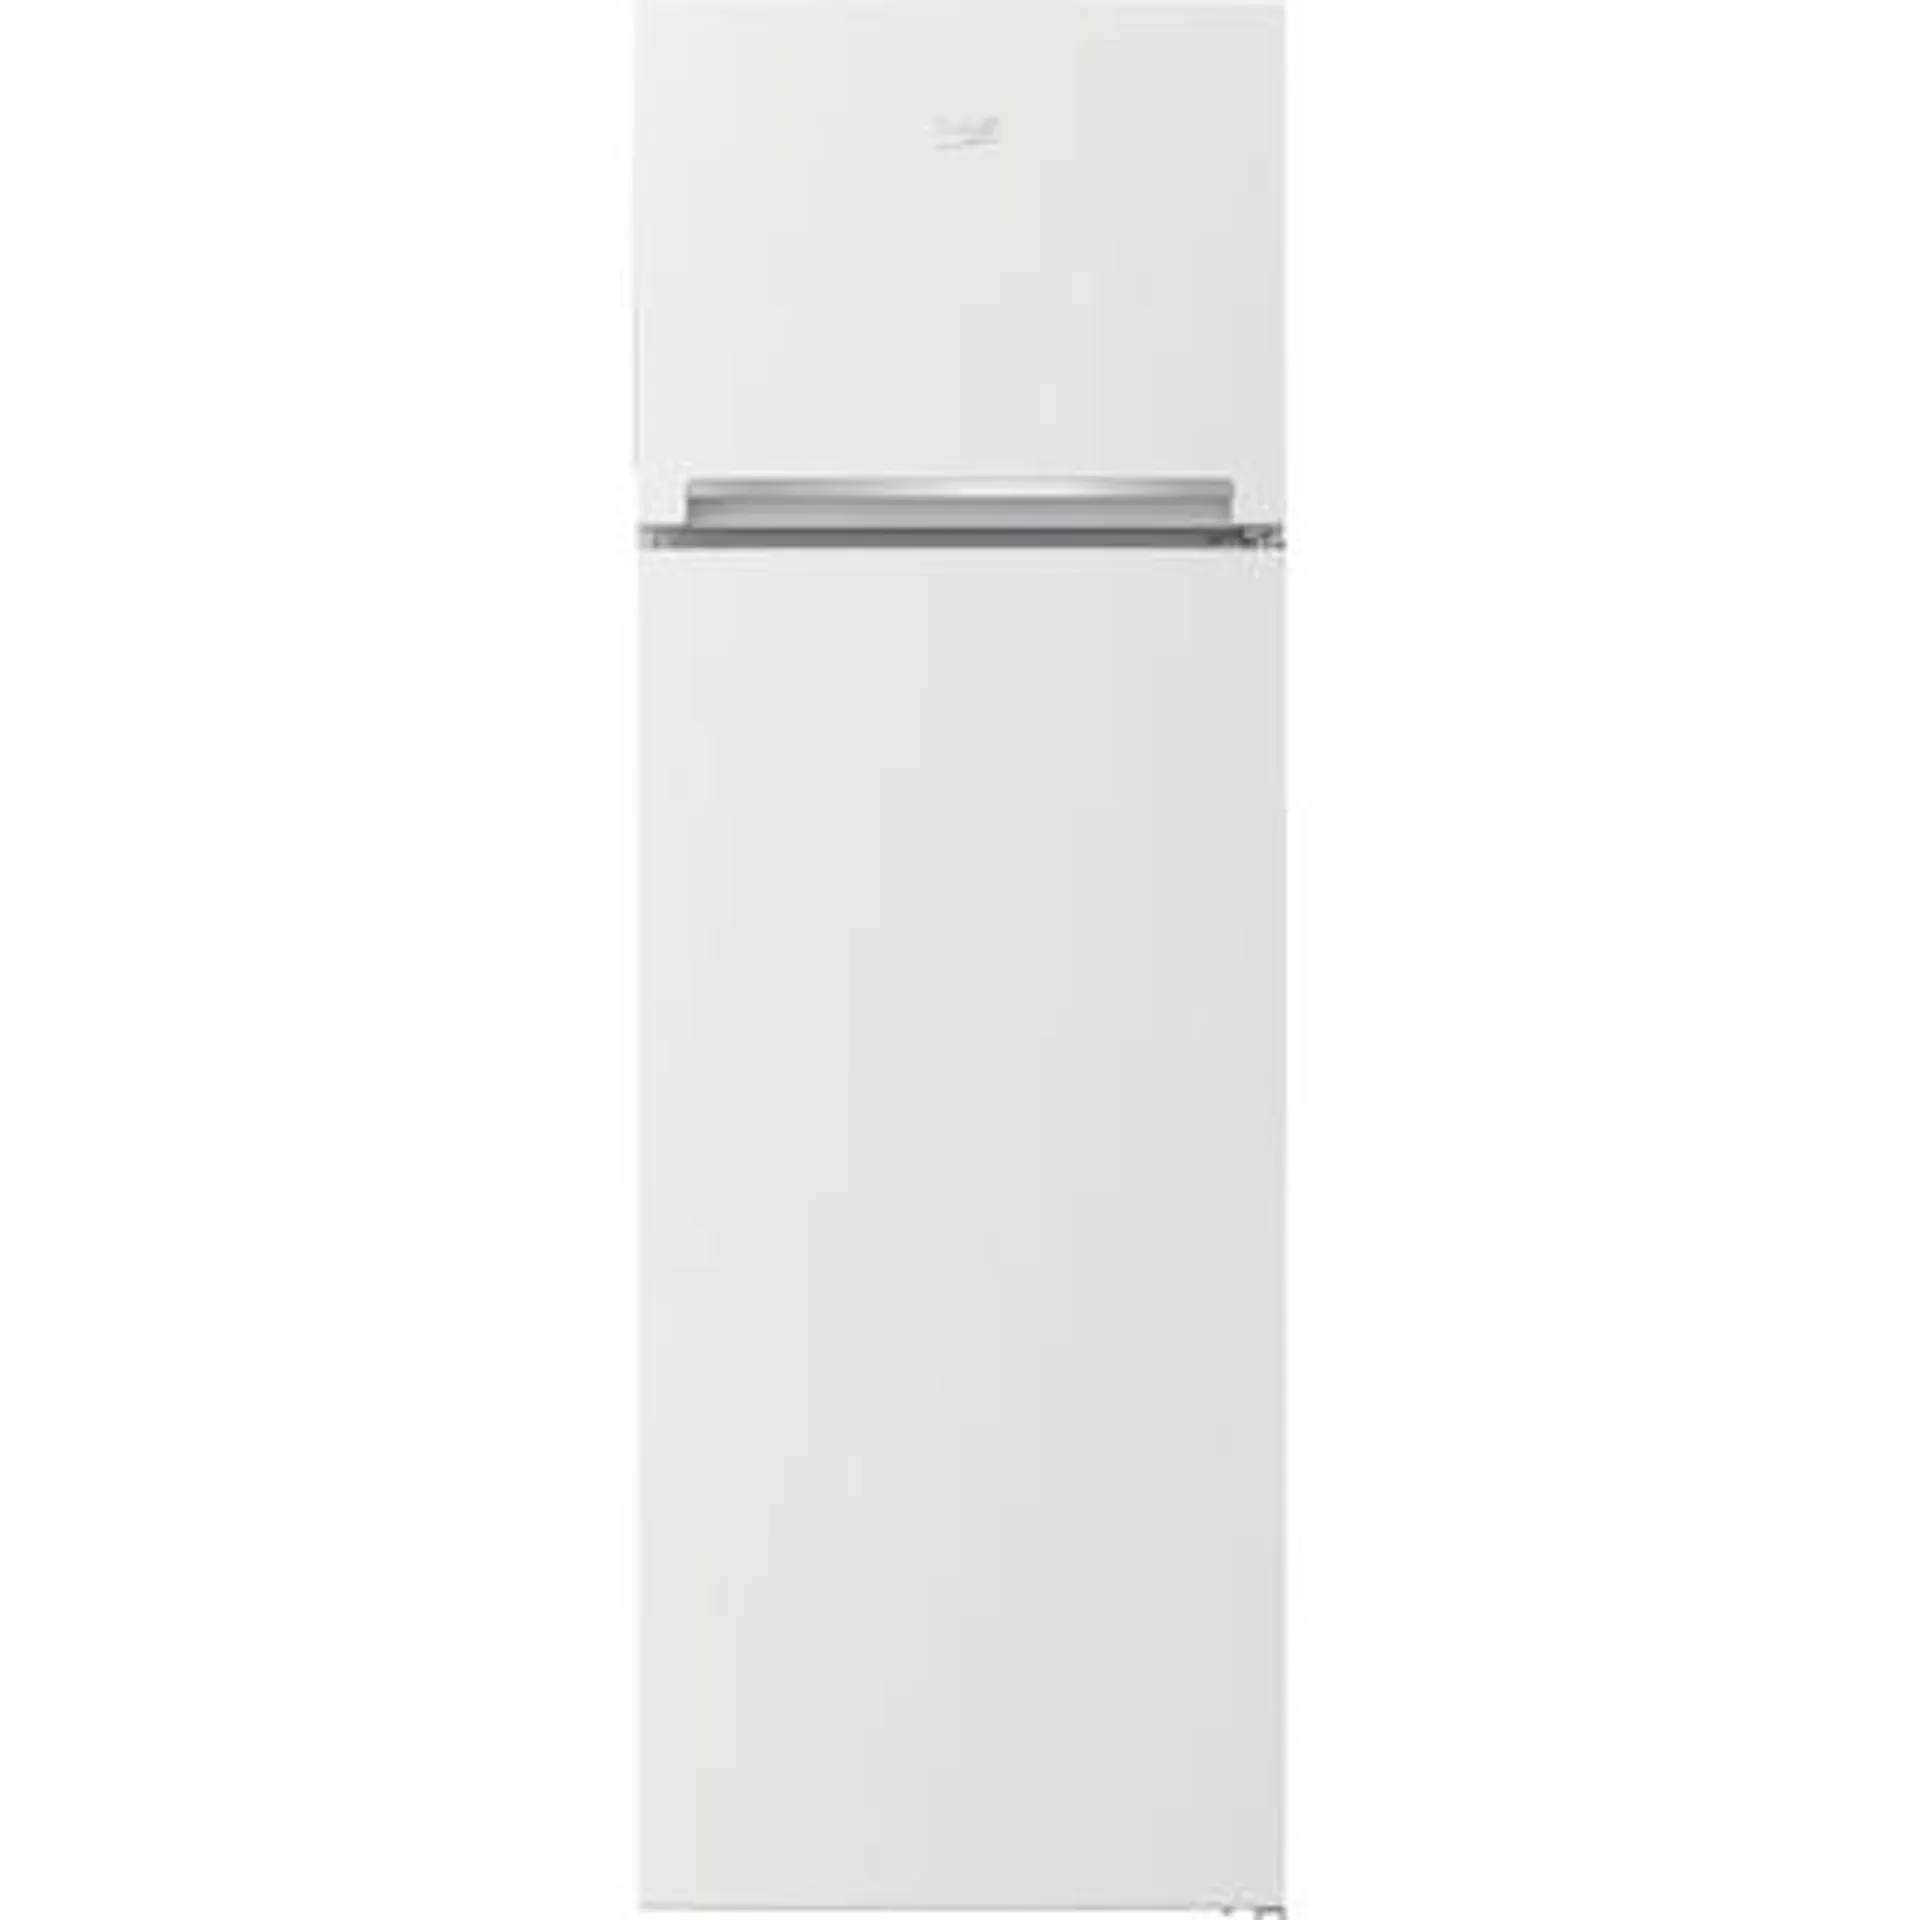 Tipologia di frigorifero Doppia porta - Nuova Classe efficienza energetica F - Sistema di raffreddamento Statico - Tipo di Ripiani Cristallo/Vetro